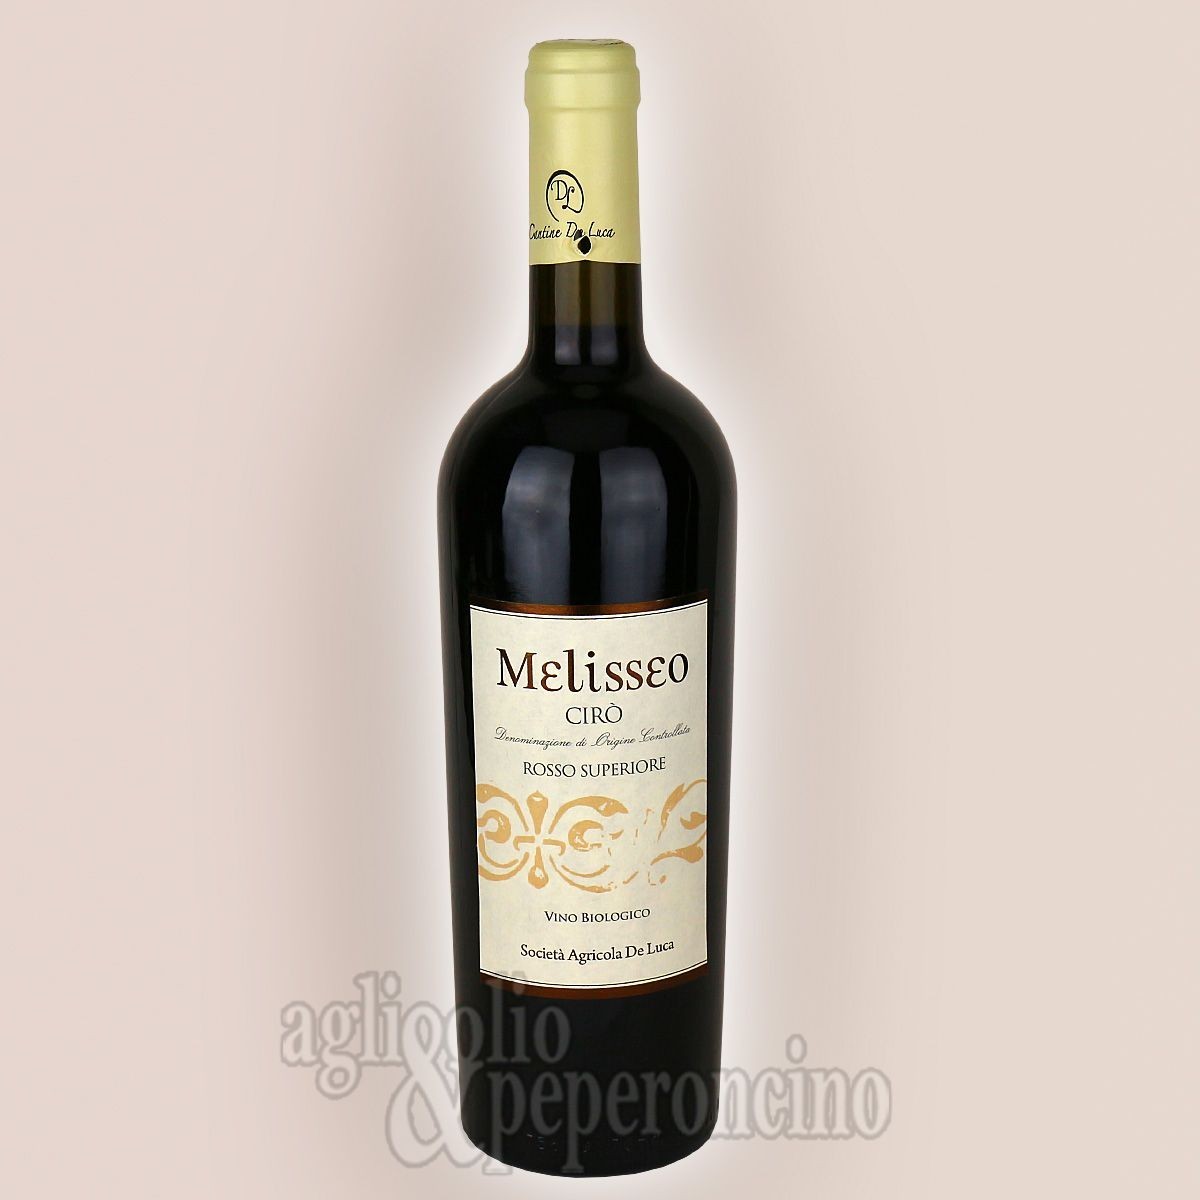 Melisseo Cirò DOC Rosso Superiore 750 ml - Vino biologico calabrese - Cantine De Luca